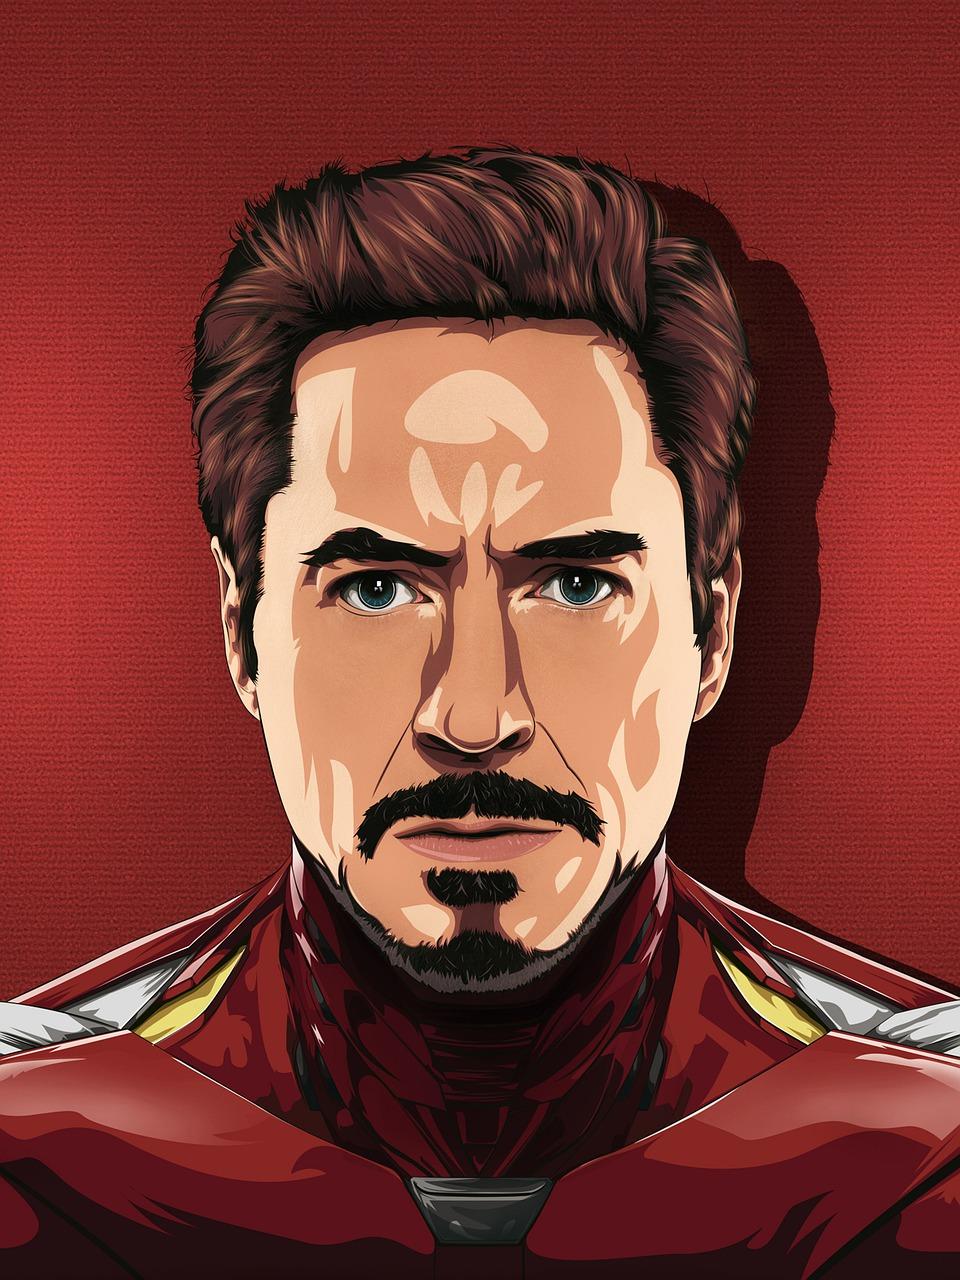  How Tall Is Tony Stark 